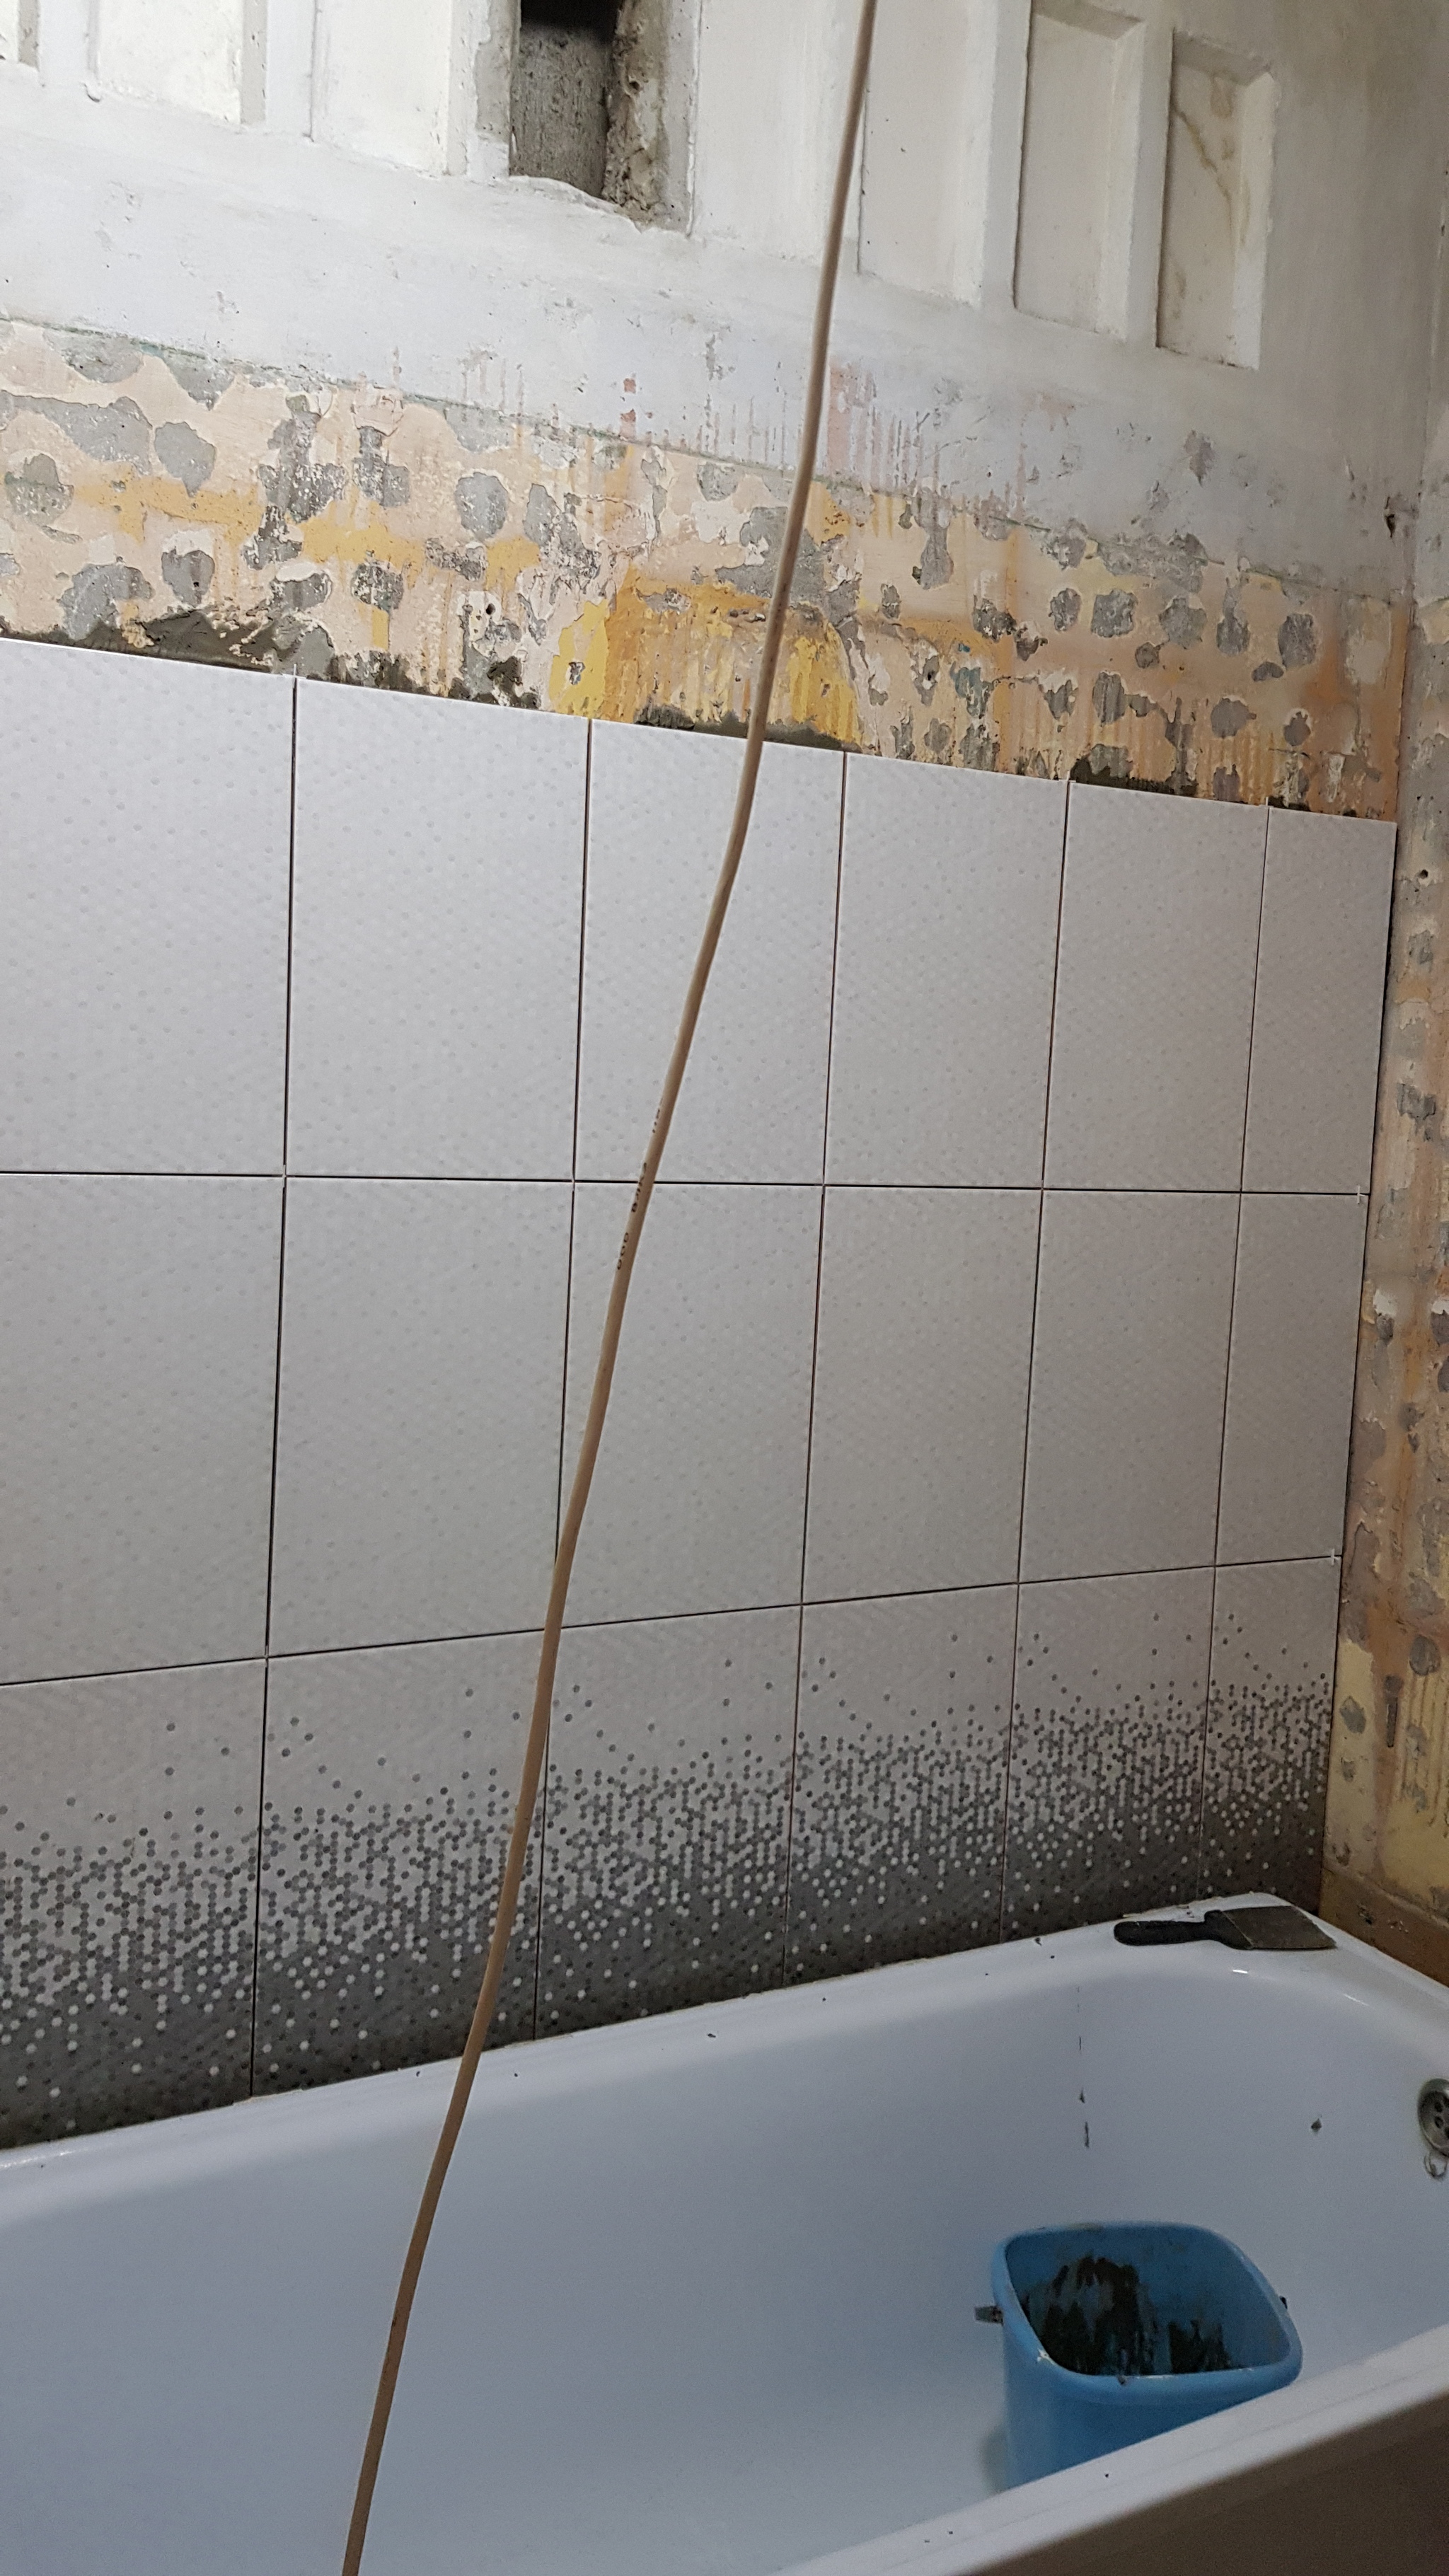 Как герметизировать пространство между ванной и стеной, если ванна короче длины стены?